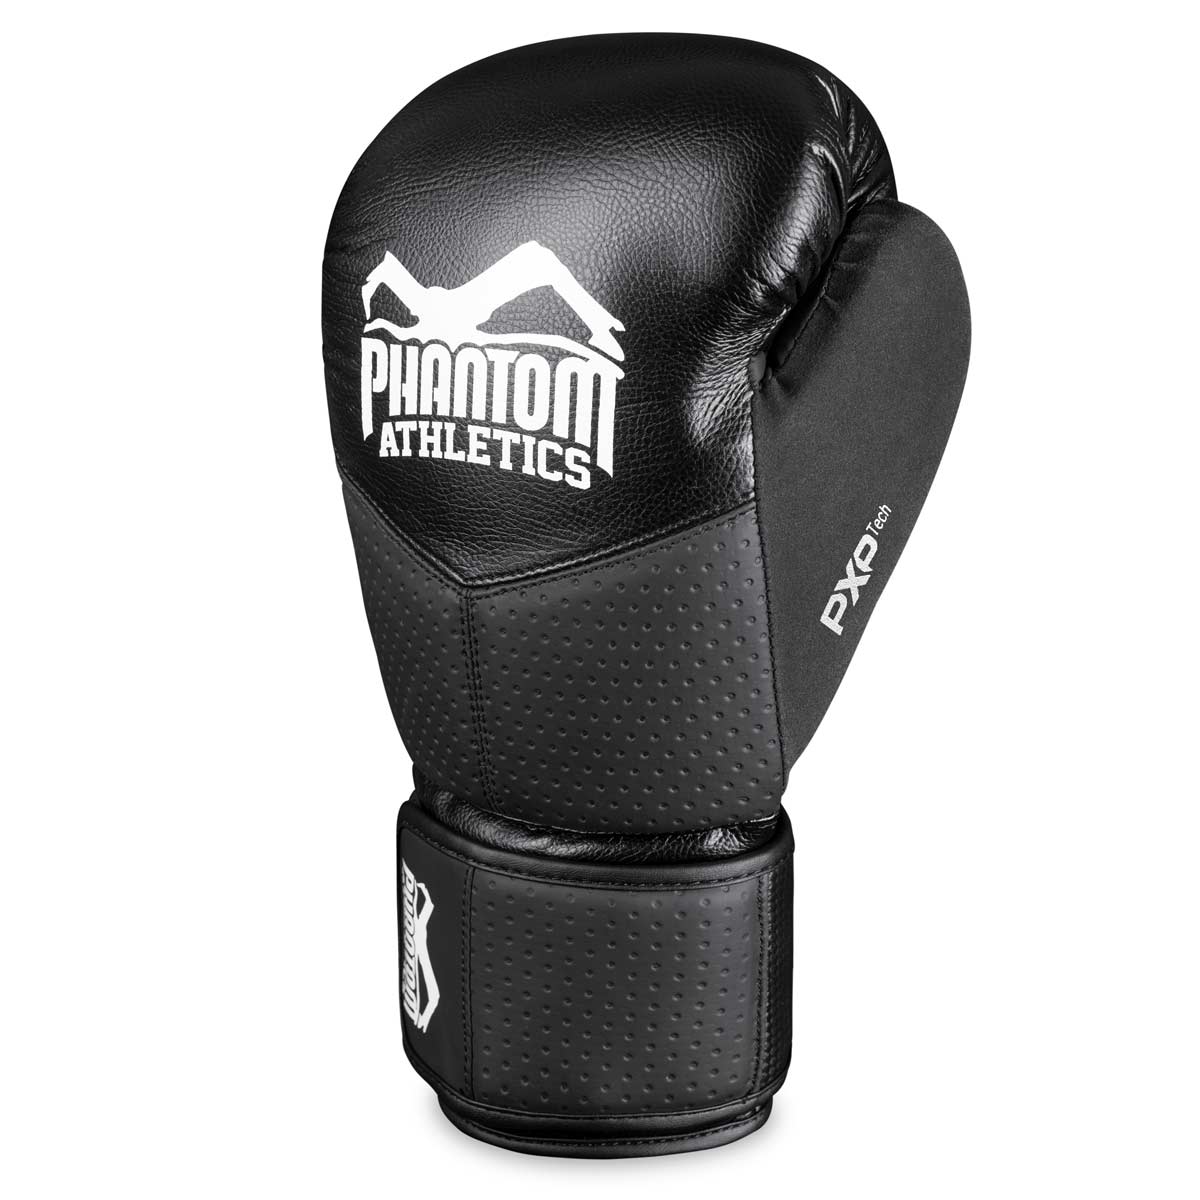 Die Phantom RIOT PRO Boxhandschuhe. Ideal für dein Kampfsport Training und Wettkämpfe. Perfekte Passform und überragende Qualität für Training und Sparring. Linker Boxhandschuh.